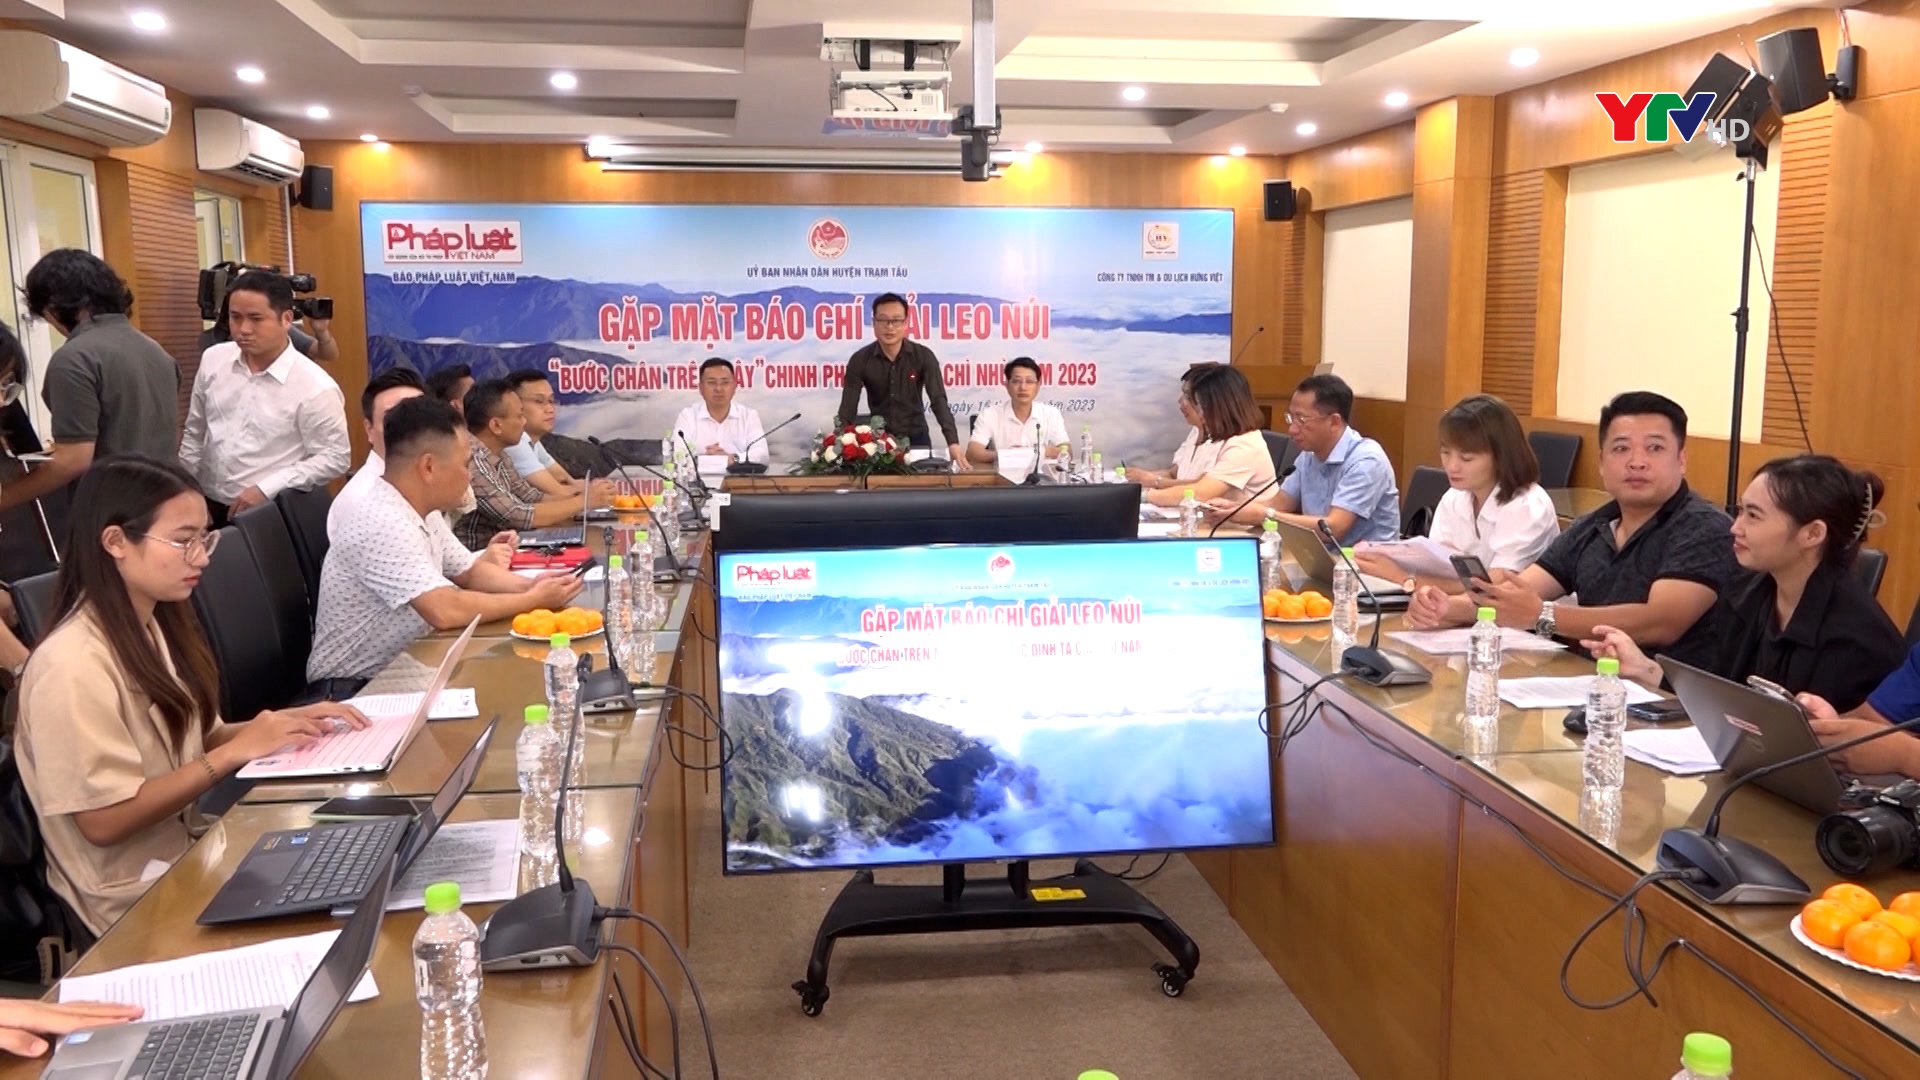 Gặp mặt báo chí giới thiệu Giải Leo núi chinh phục đỉnh Tà Chì Nhù lần thứ nhất năm 2023